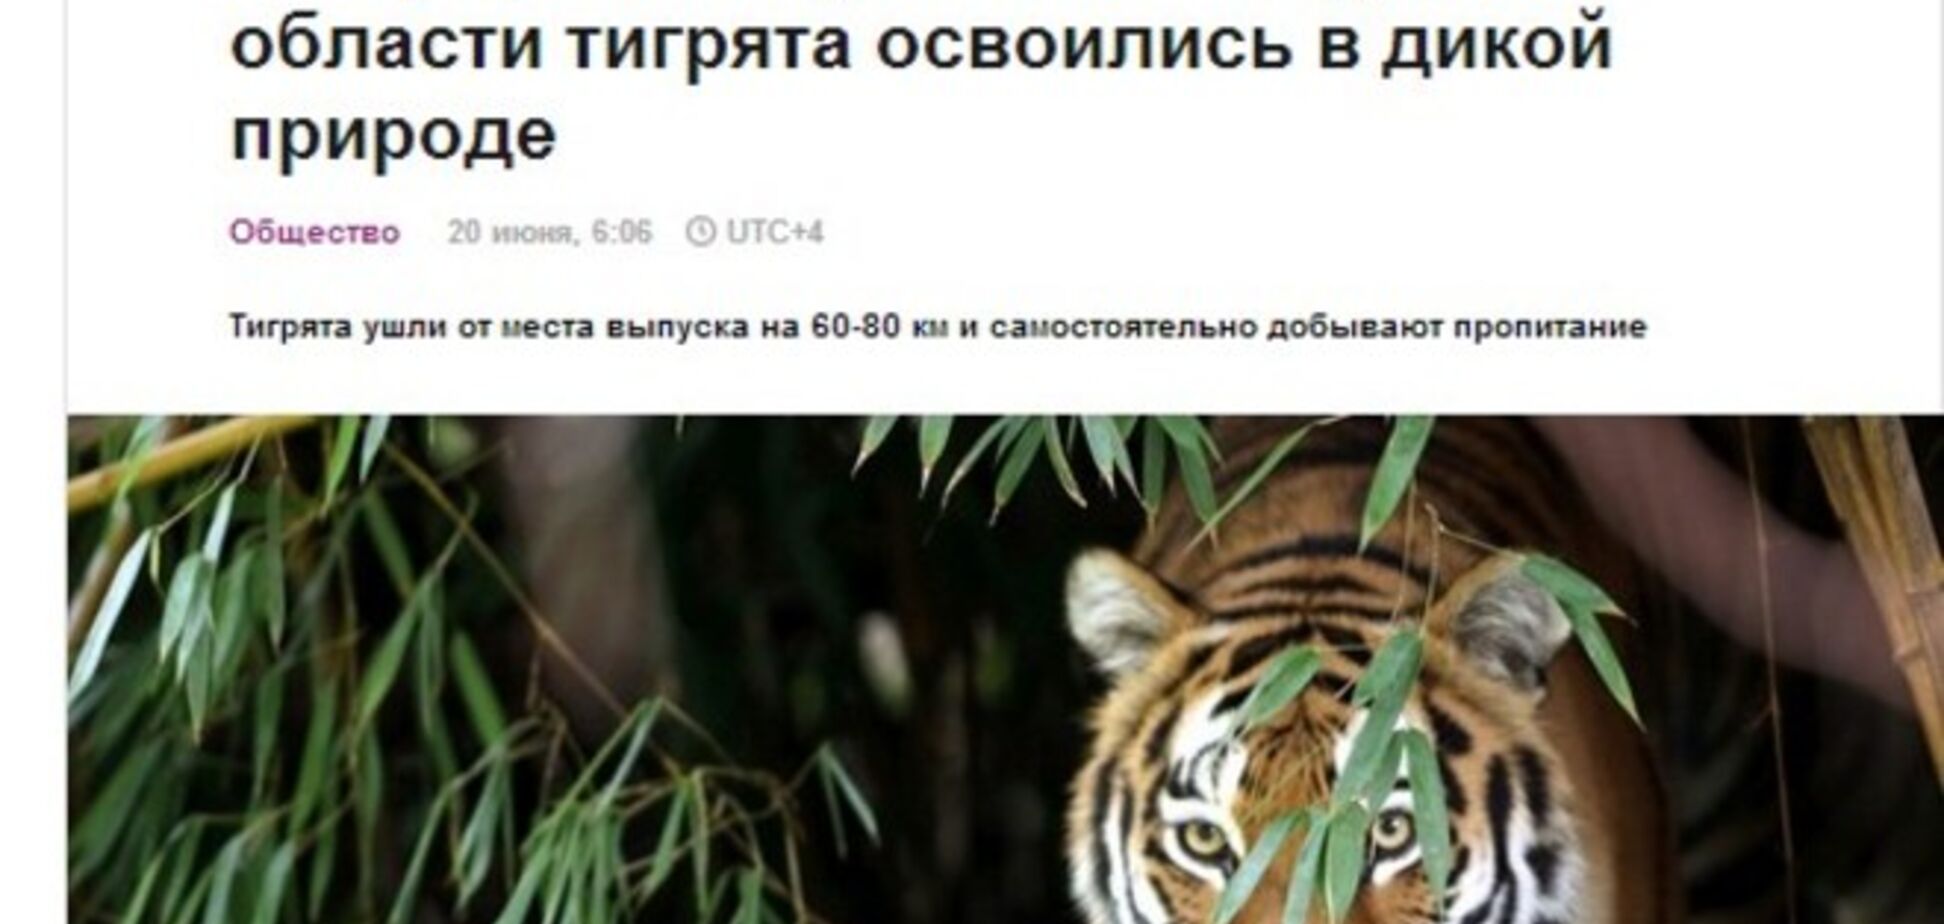 В то время как на Донбассе идут бои, российские СМИ судачат о тигрятах, выпущенных Путиным